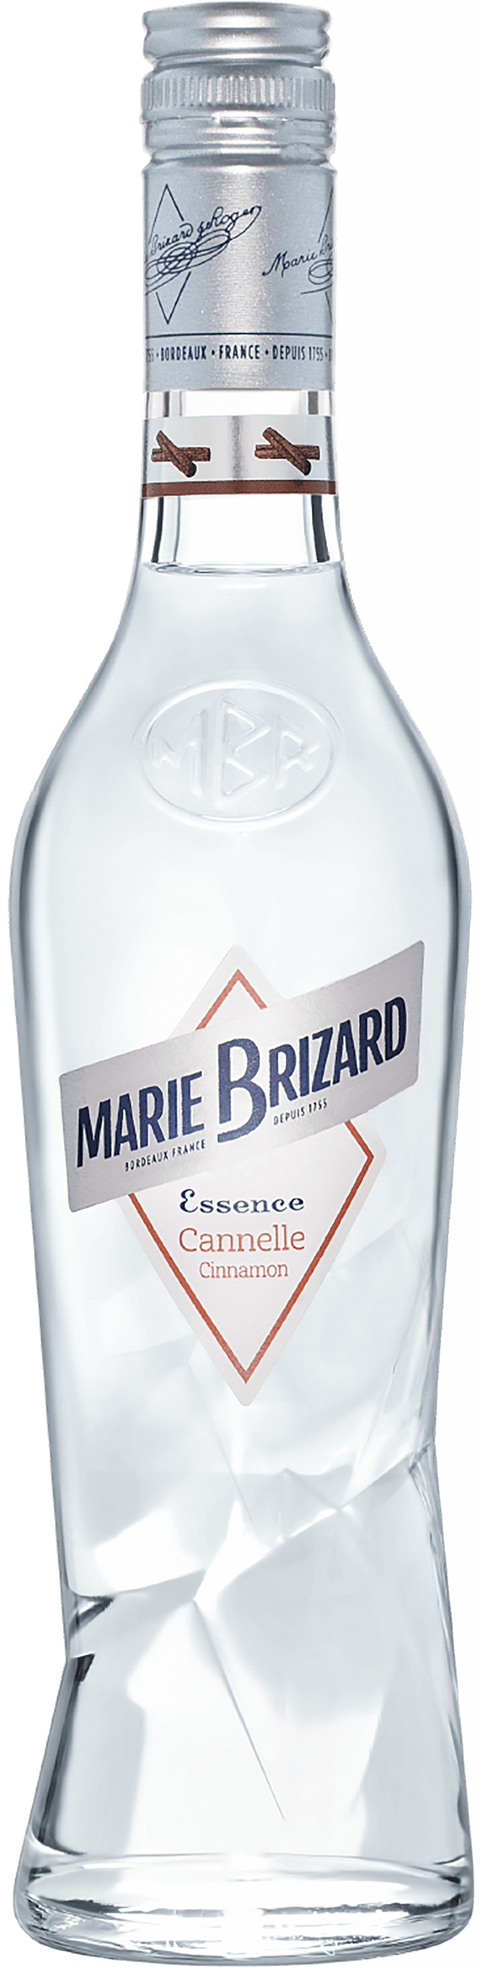 Essence Cannelle---0---Liqueur---Marie Brizard---0.5